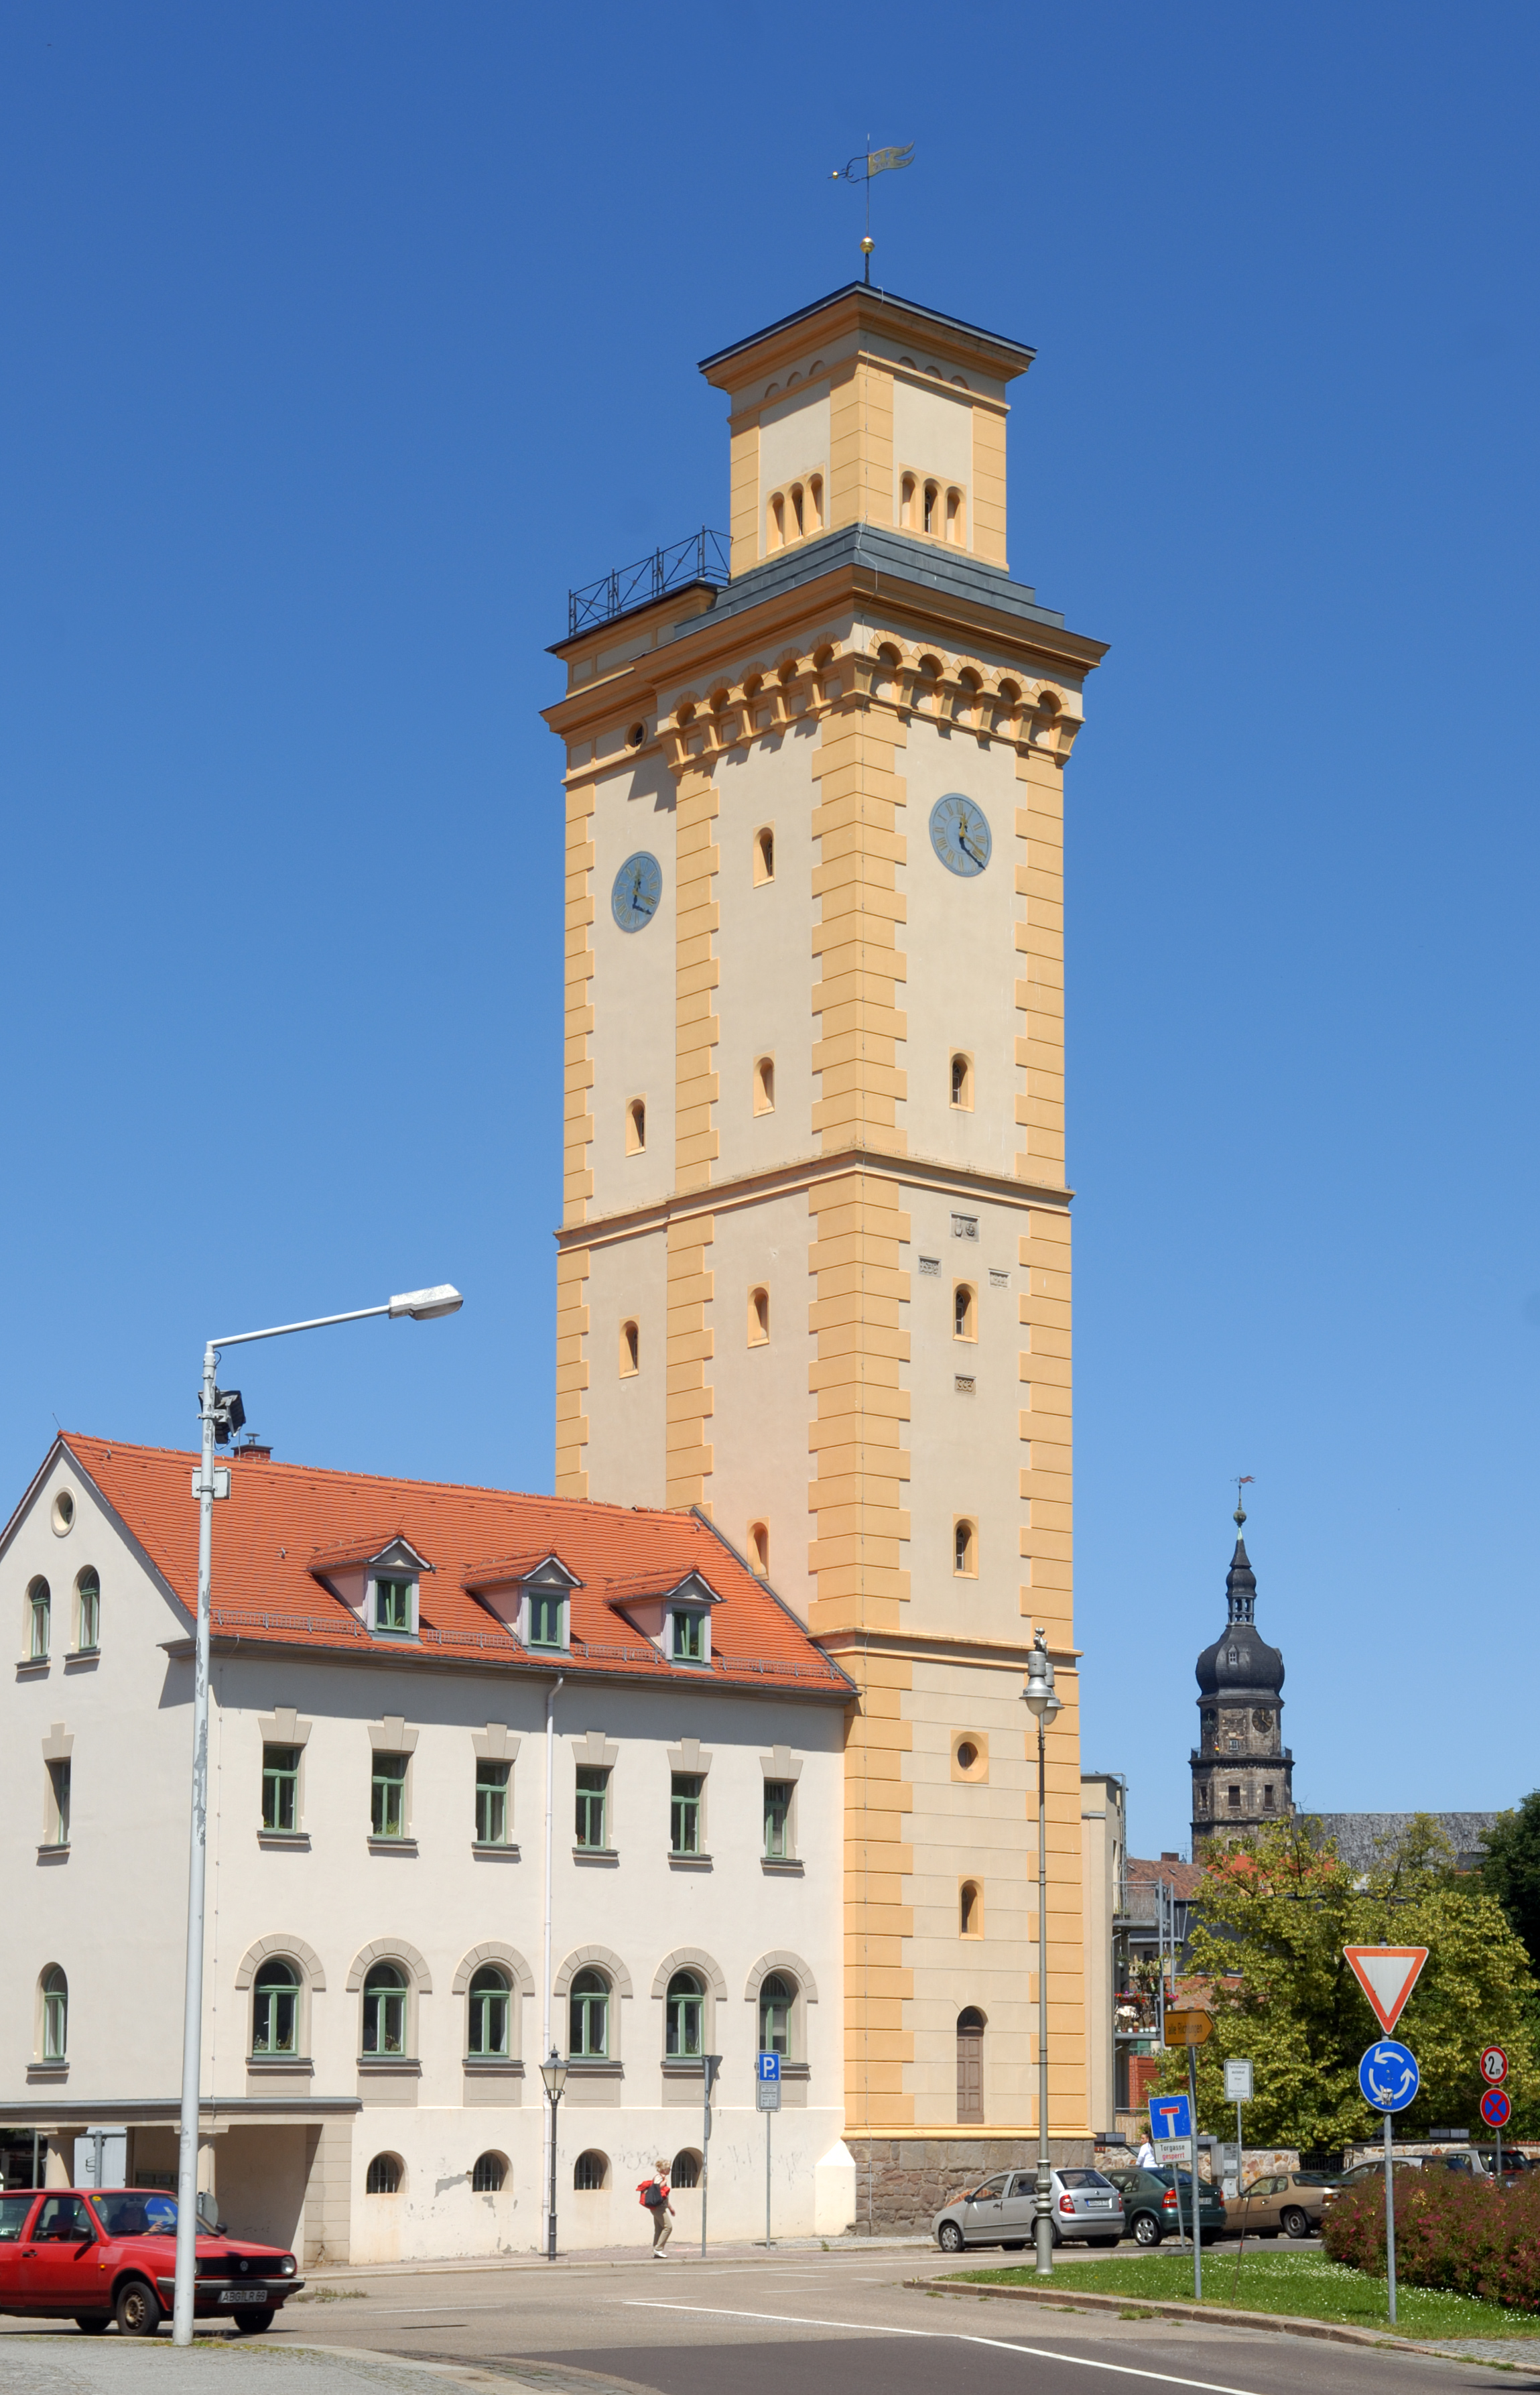 Altenburg - art tower (aka)